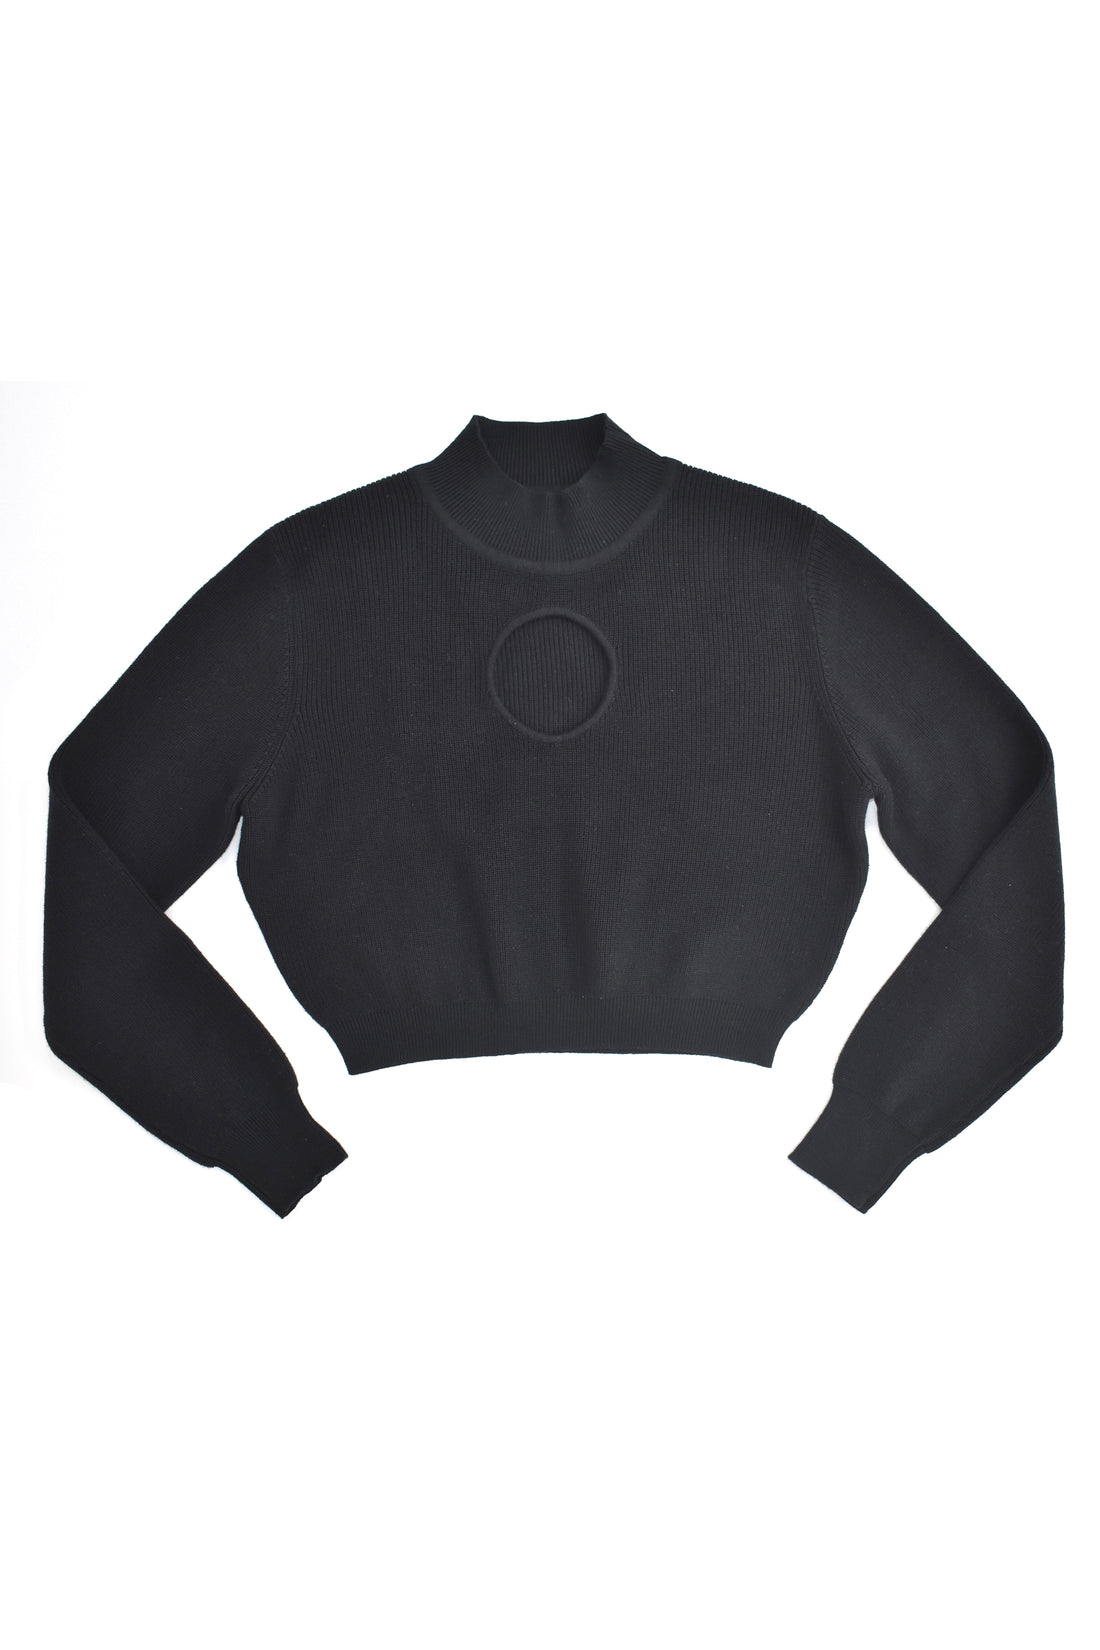 Glory Hole Viscose Sweater Black